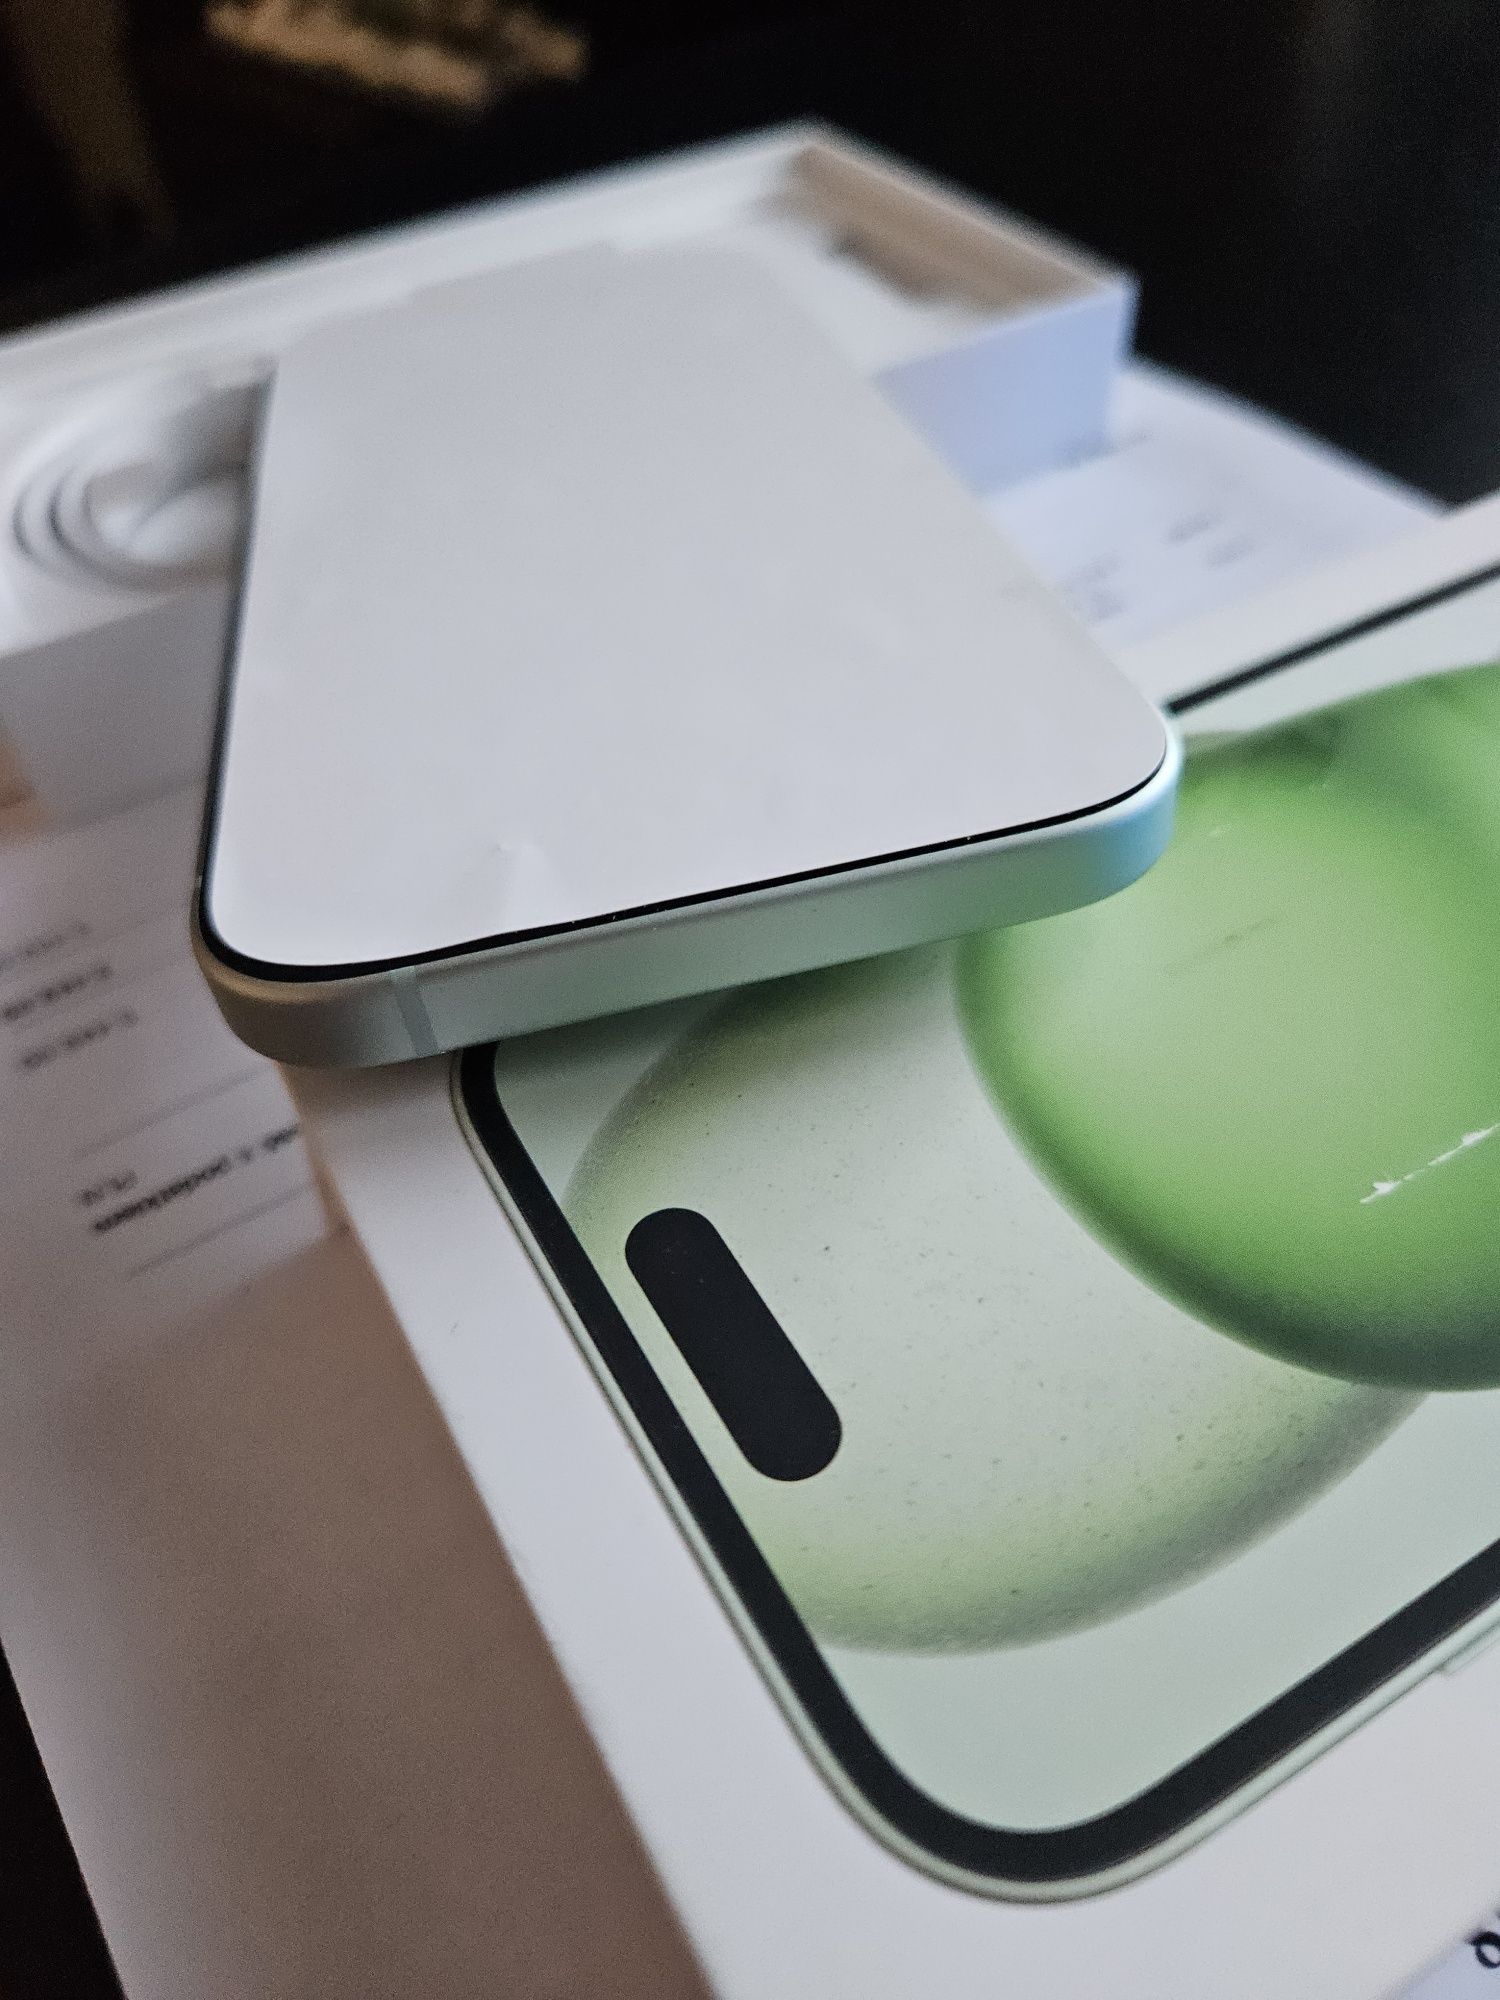 Nowy Apple iPhone 15 128gb 5G green zielony okazja zamiana zamienie